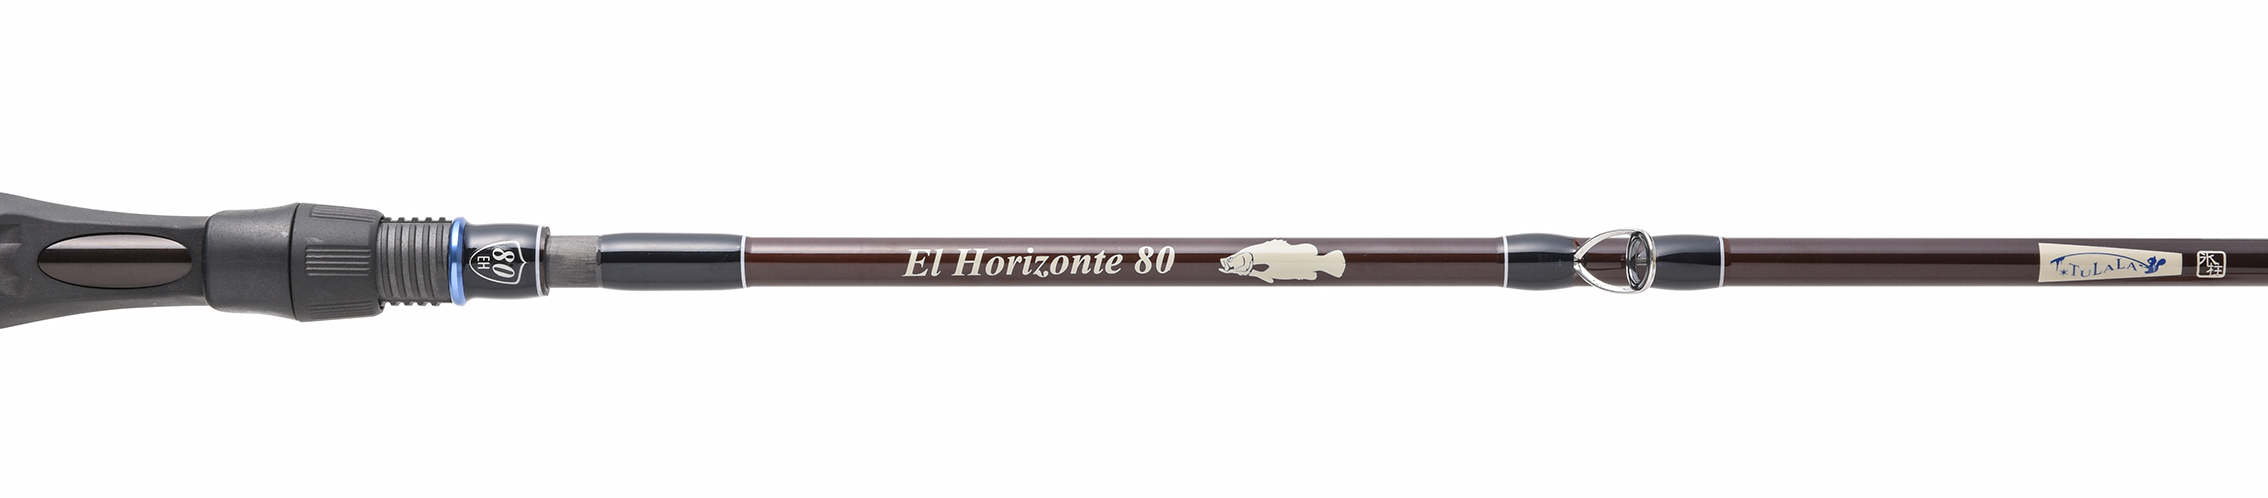 El Horizonte 80 | ジョイント